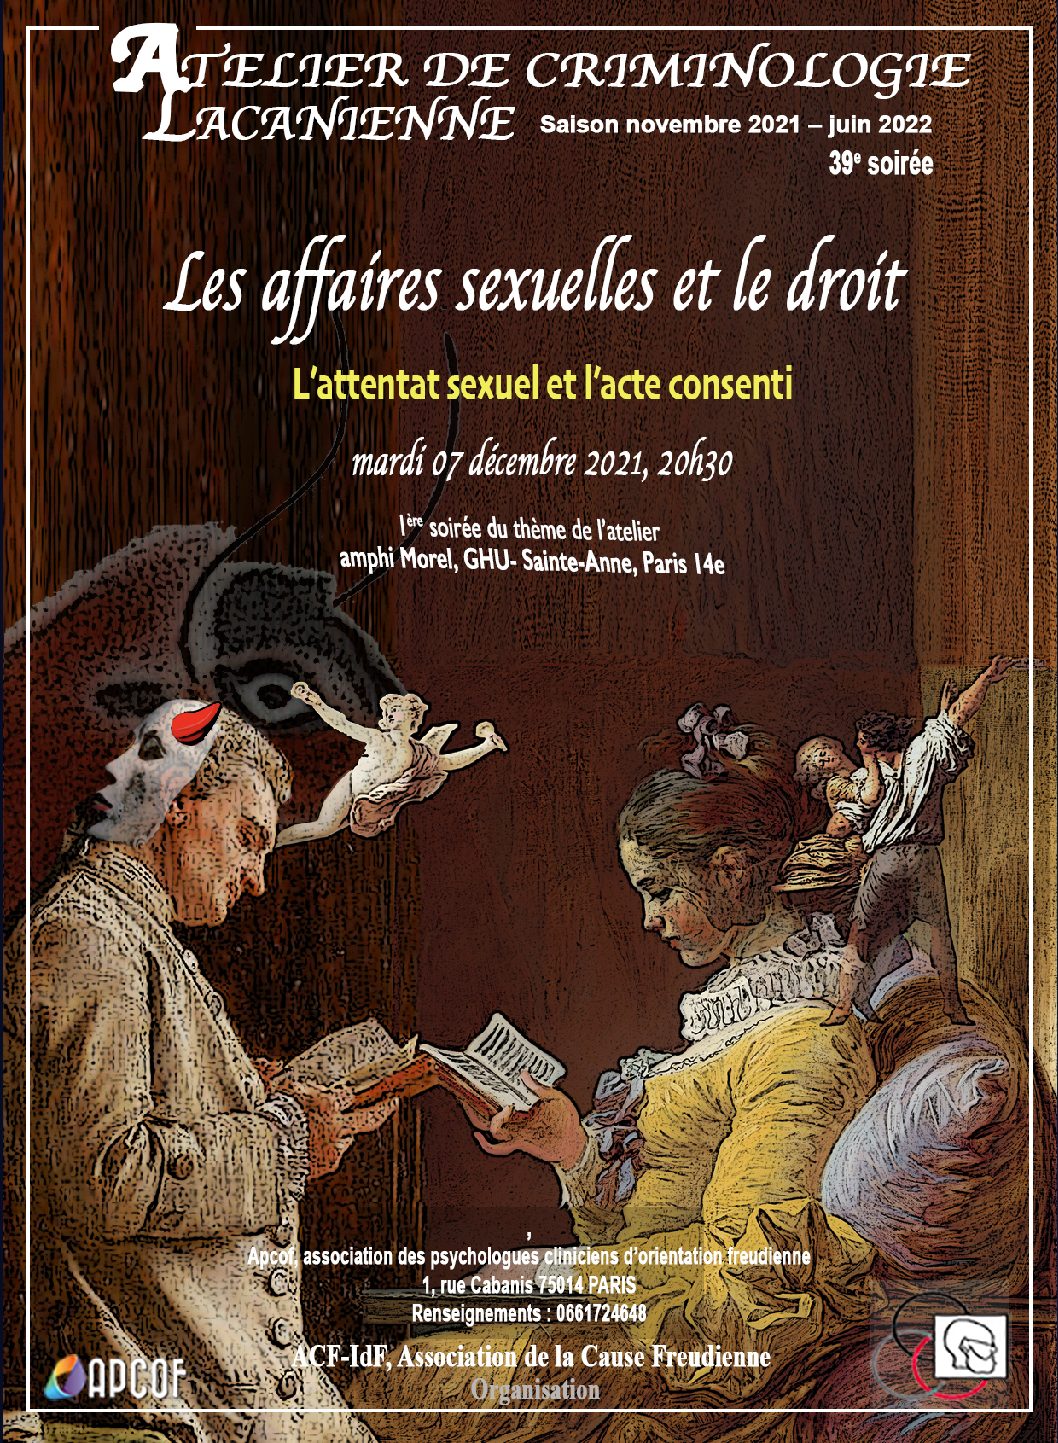 39ème soirée criminologie lacanienne - "Les affaires sexuelles et le droit" - "L'attentat sexuel et le consentement", mardi 07 Décembre 2021, 20h30.